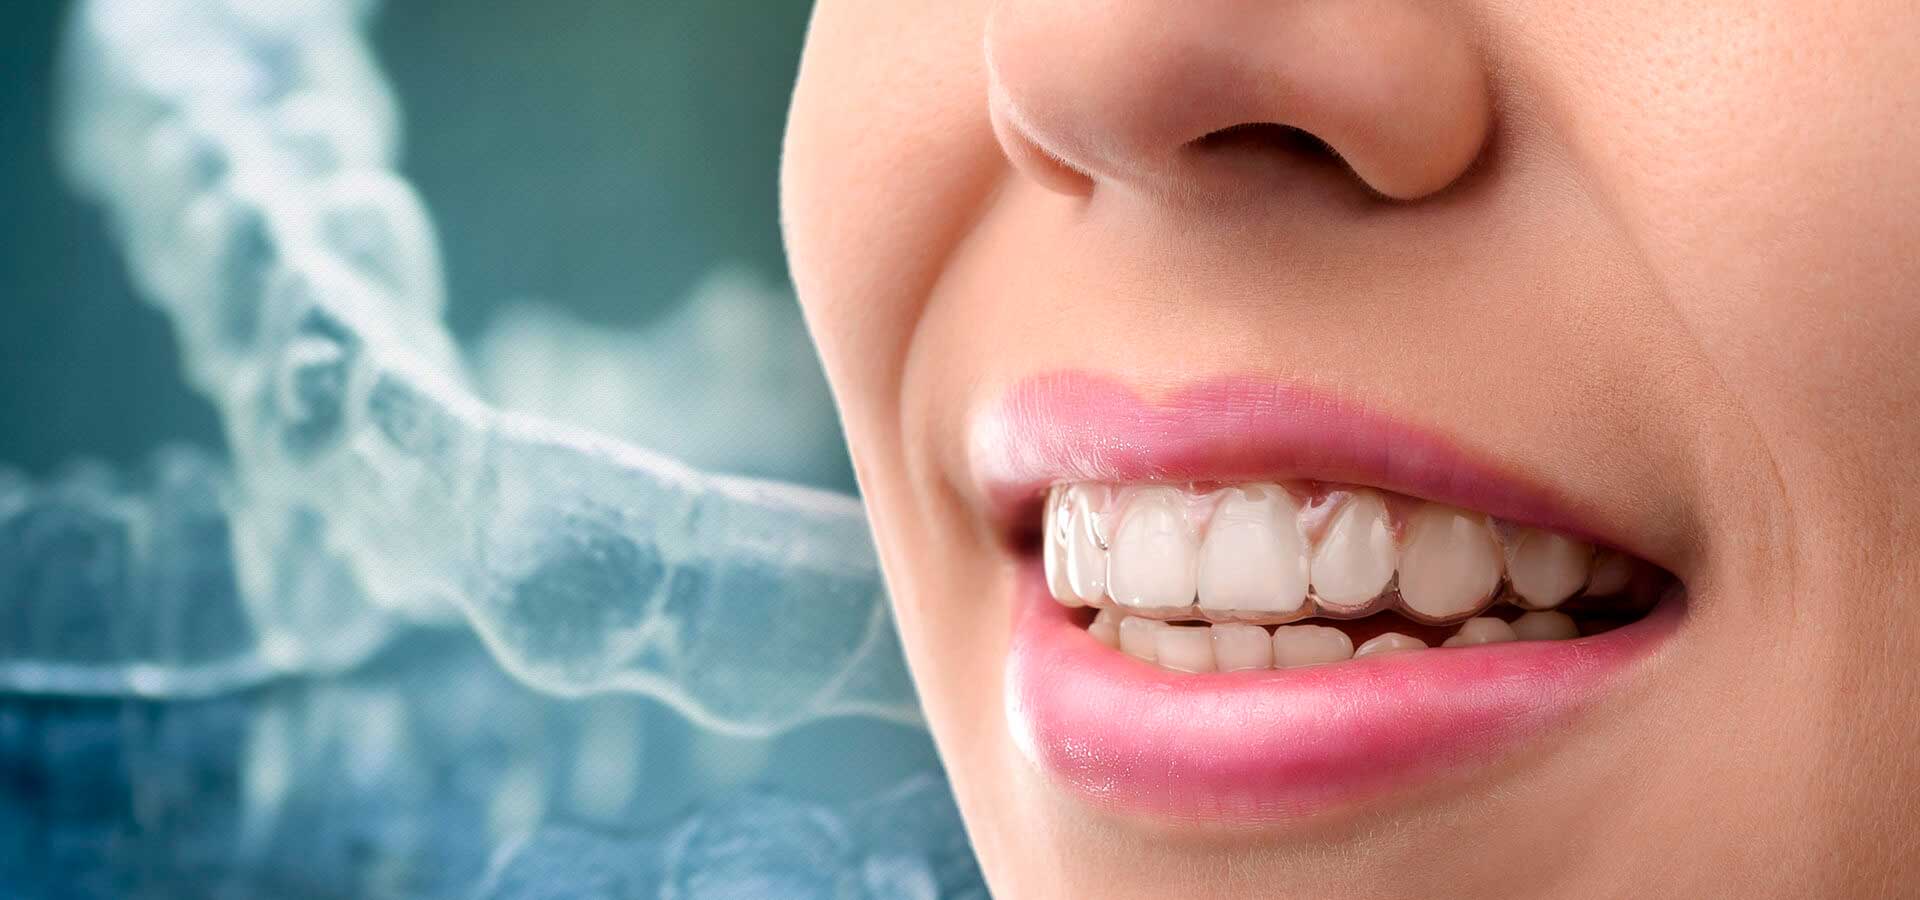 Выравнивание зубов элайнерами: инновационный подход к идеальной улыбке